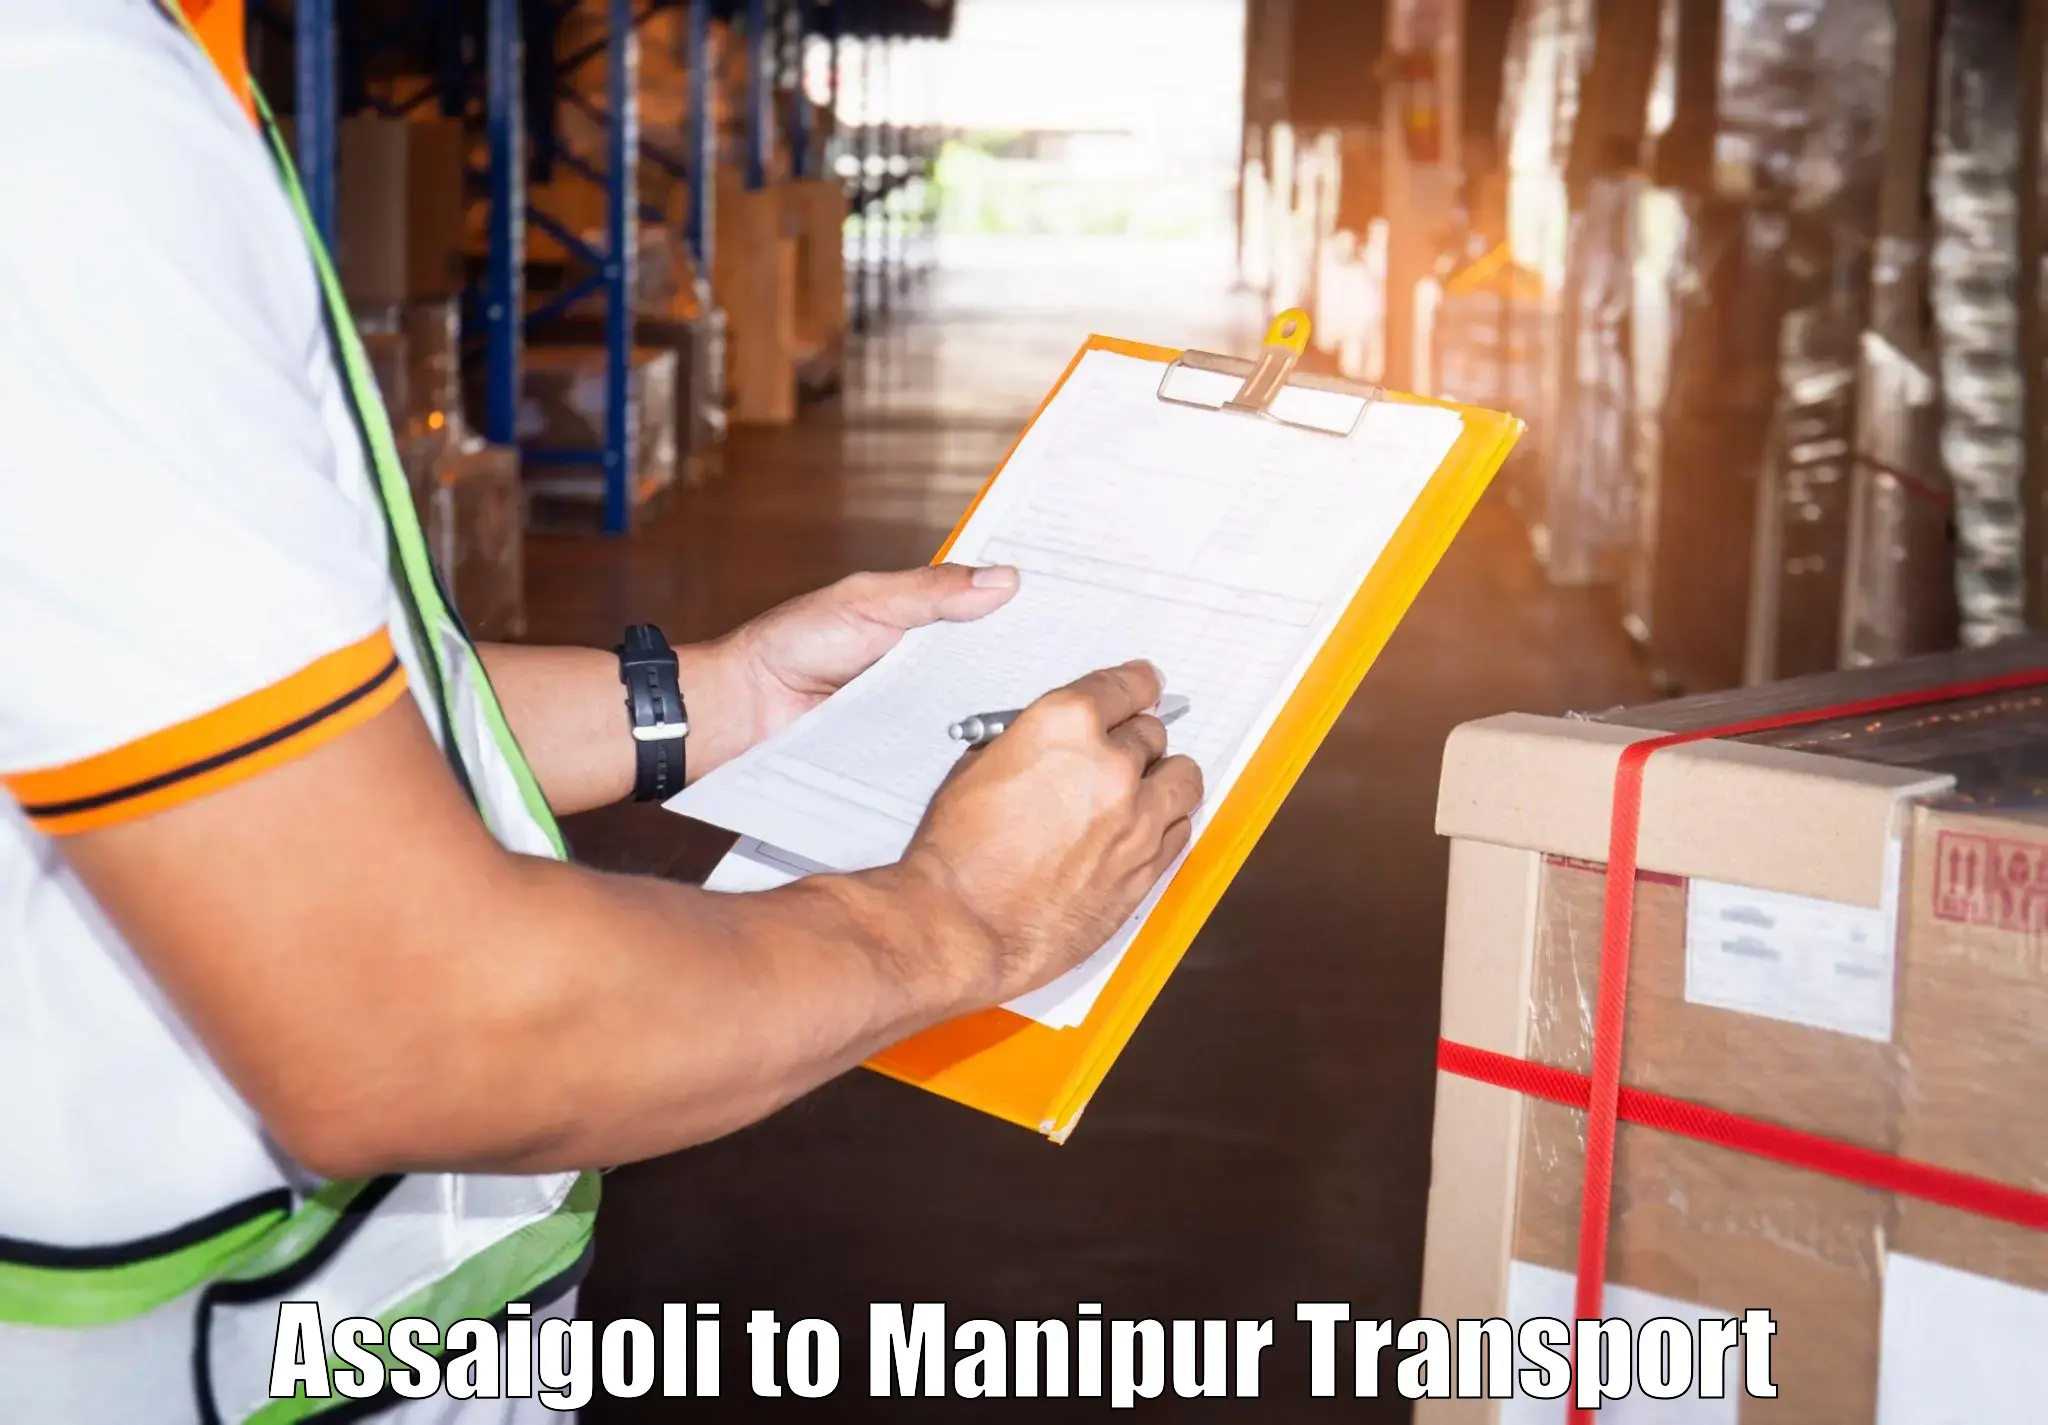 Transport in sharing Assaigoli to Kanti